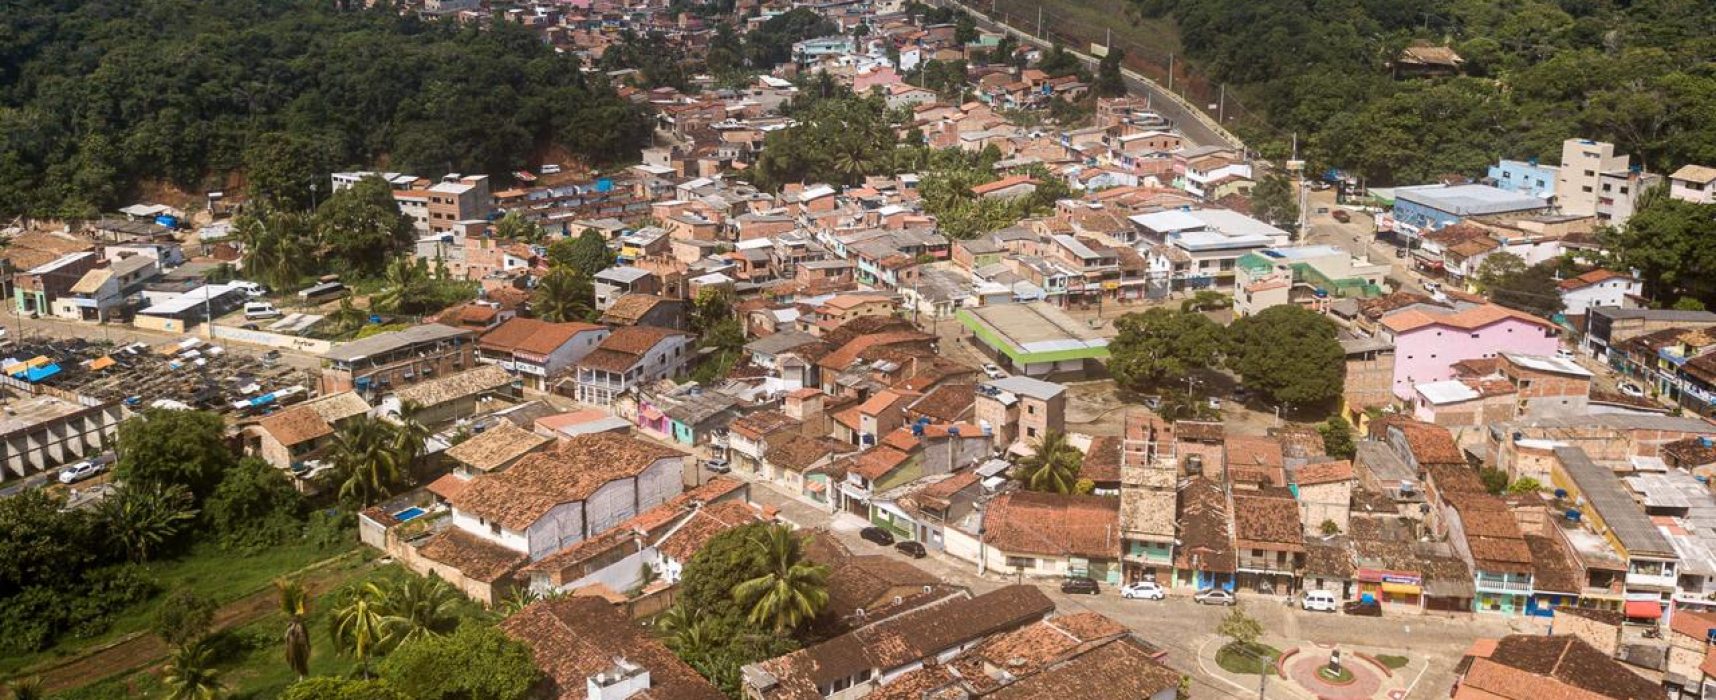 Prefeitura de Itacaré mantém barreiras sanitárias e fechamento do comércio